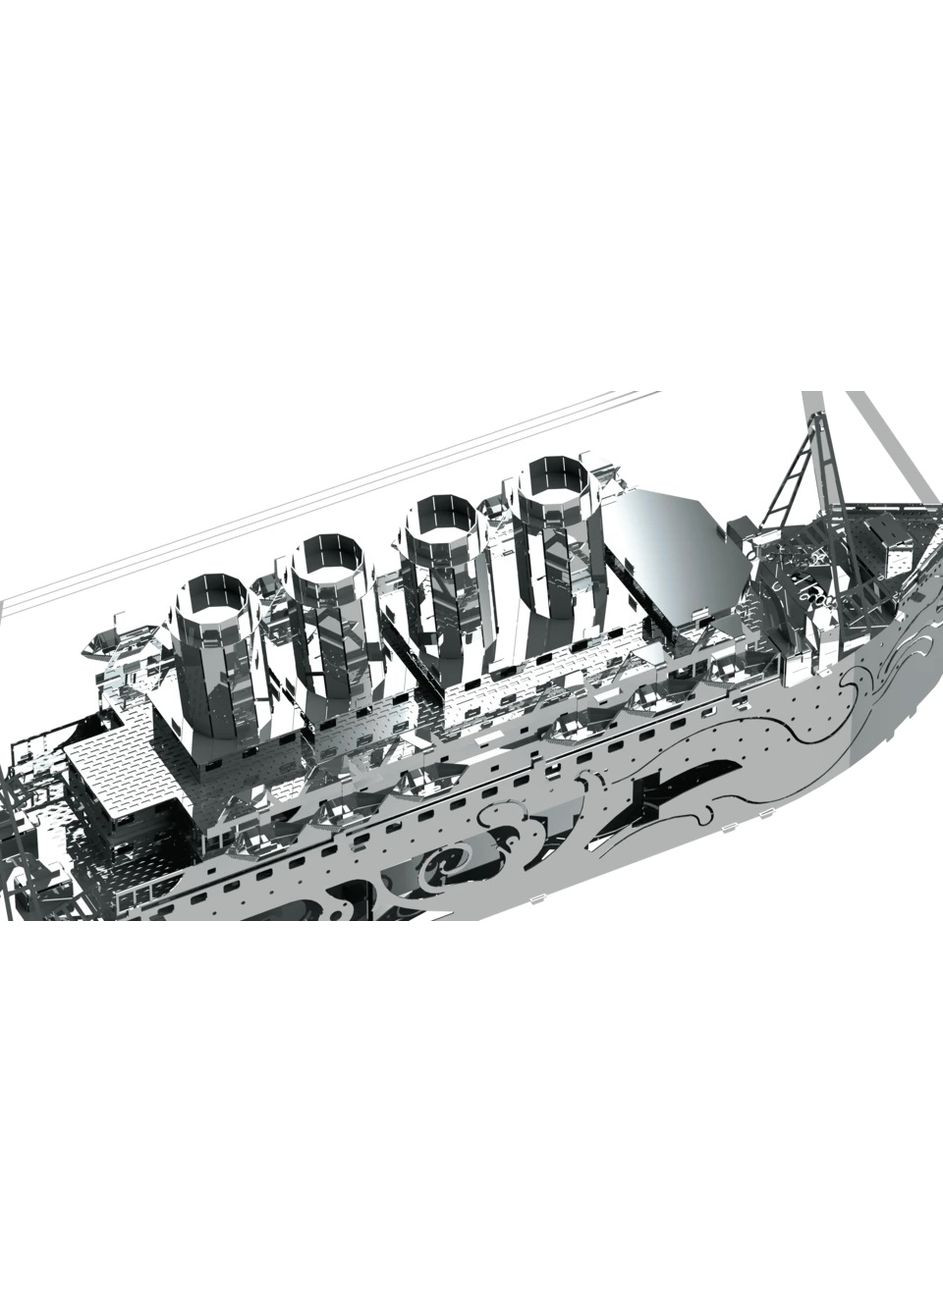 Коллекционная модель-конструктор Lost at Sea механический корабль Титаник MT044 Metal Time (267507711)